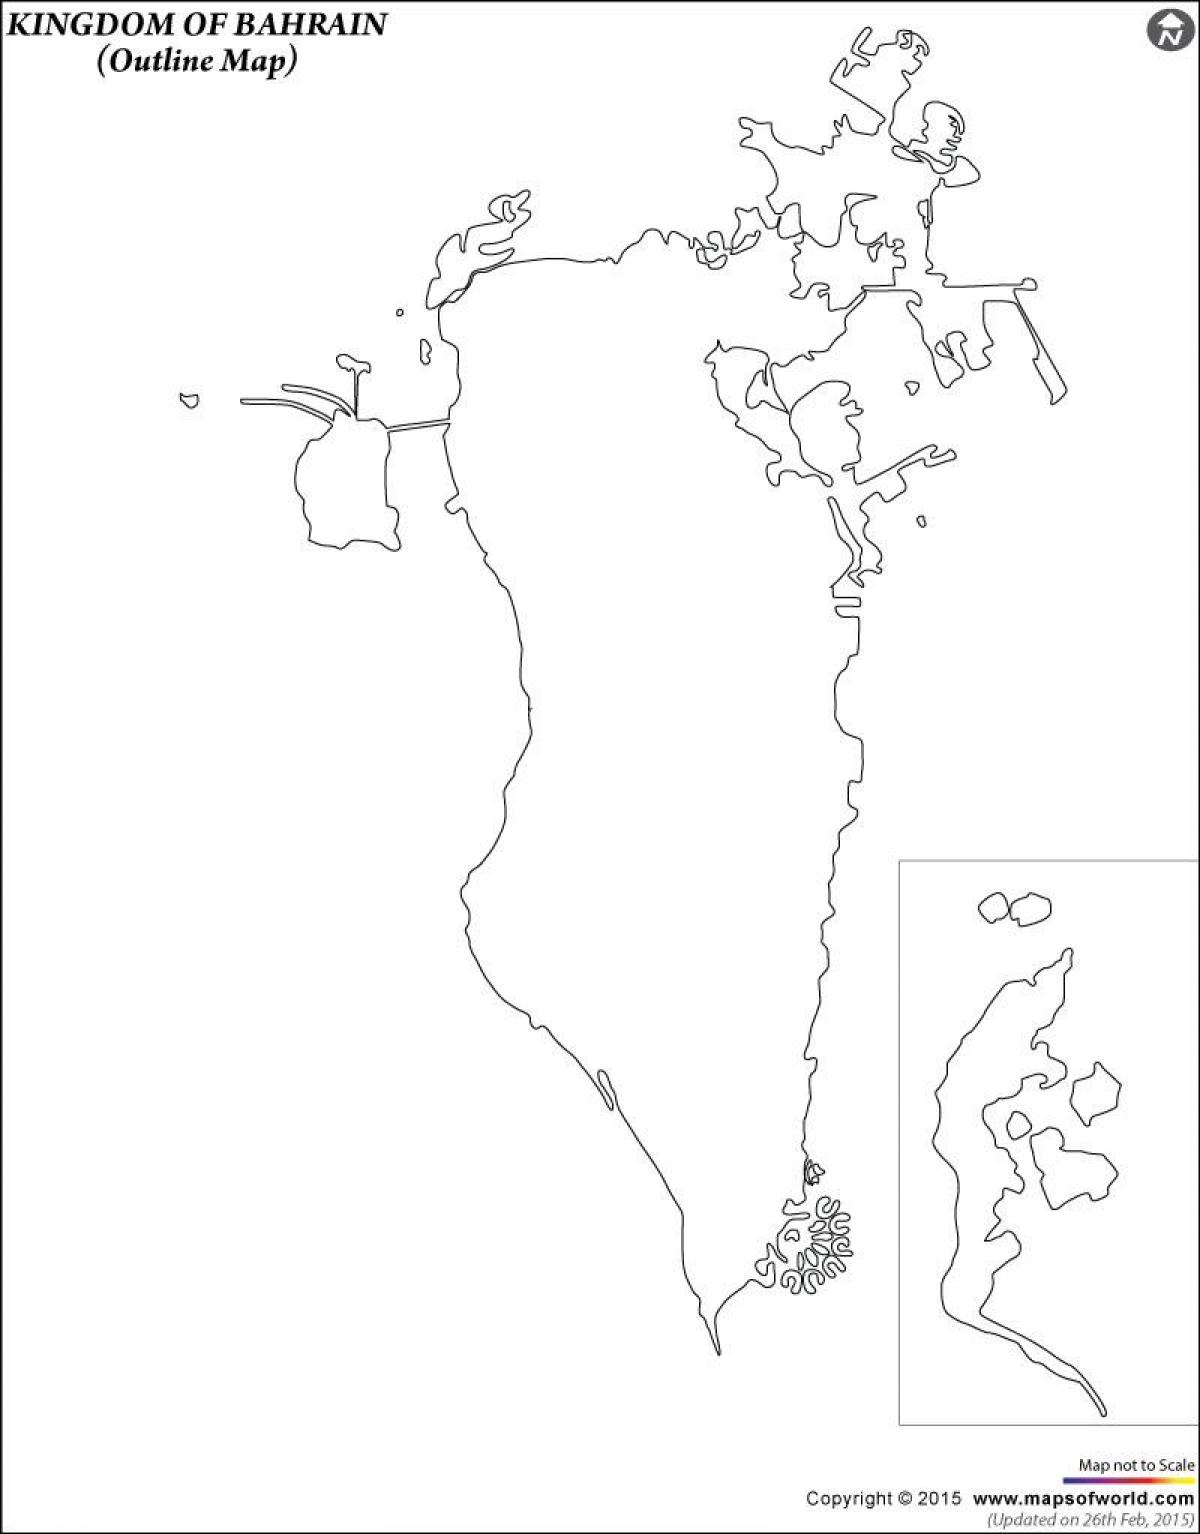 քարտեզ Բահրեյնի քարտեզի ծրագիրը